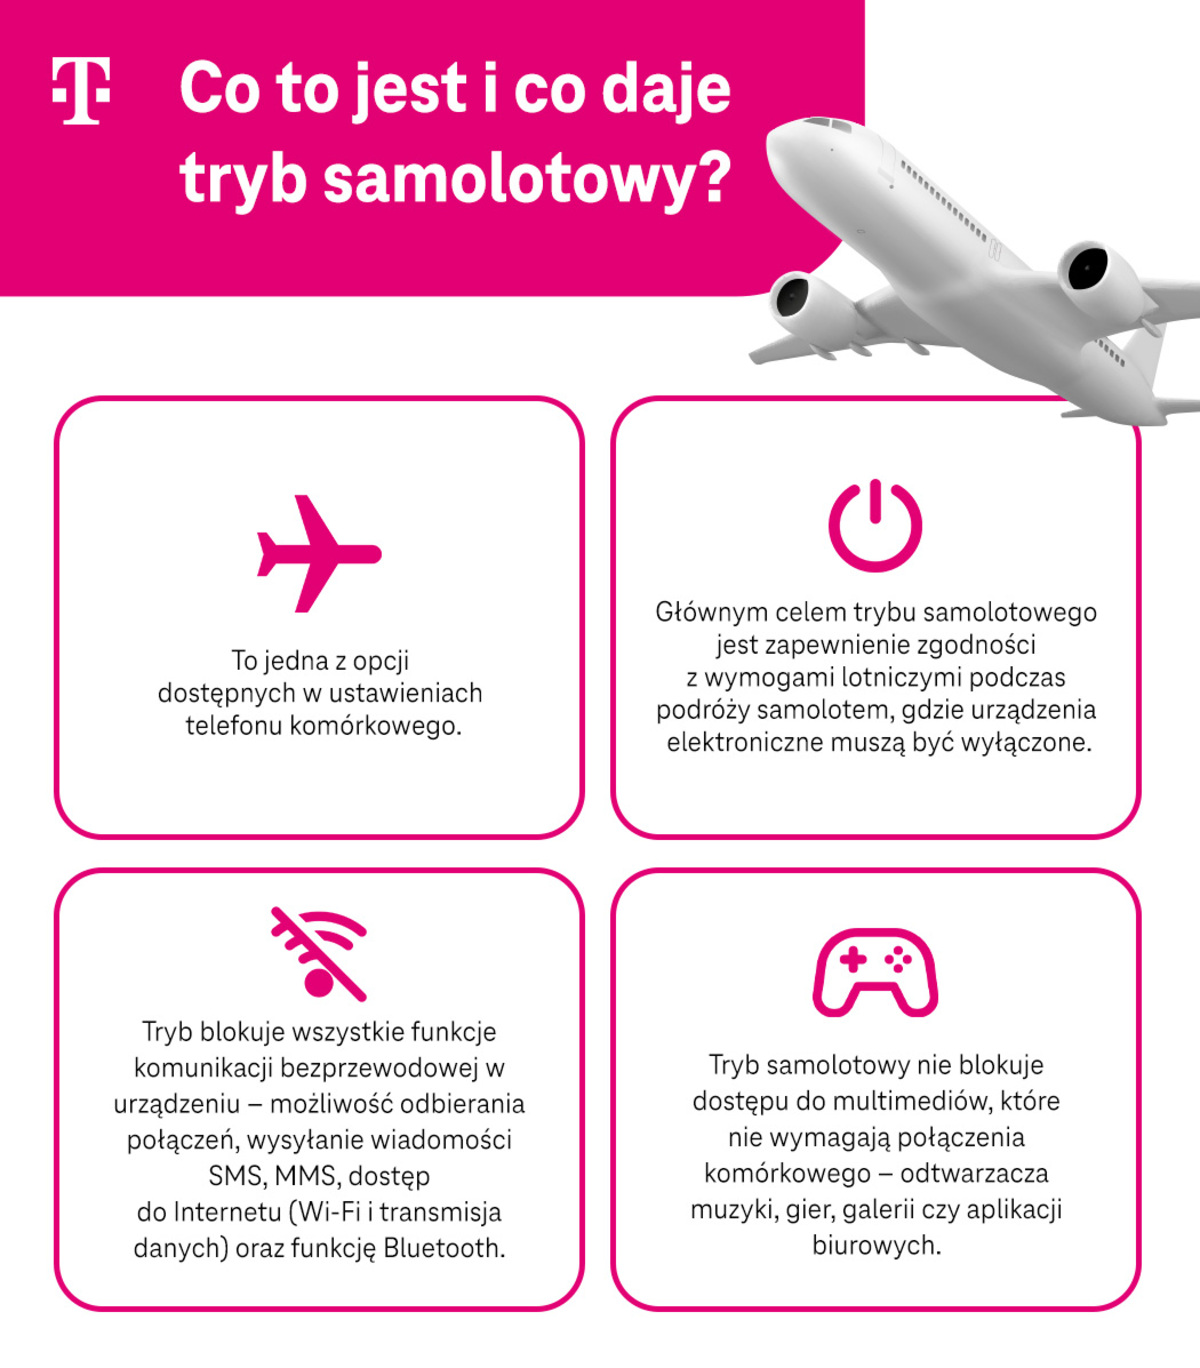 Co to jest i co daje tryb samolotowy - opcja dostępna w telefonie, celem jest zapewnienie zgodności z wymogami lotniczymi - infografika